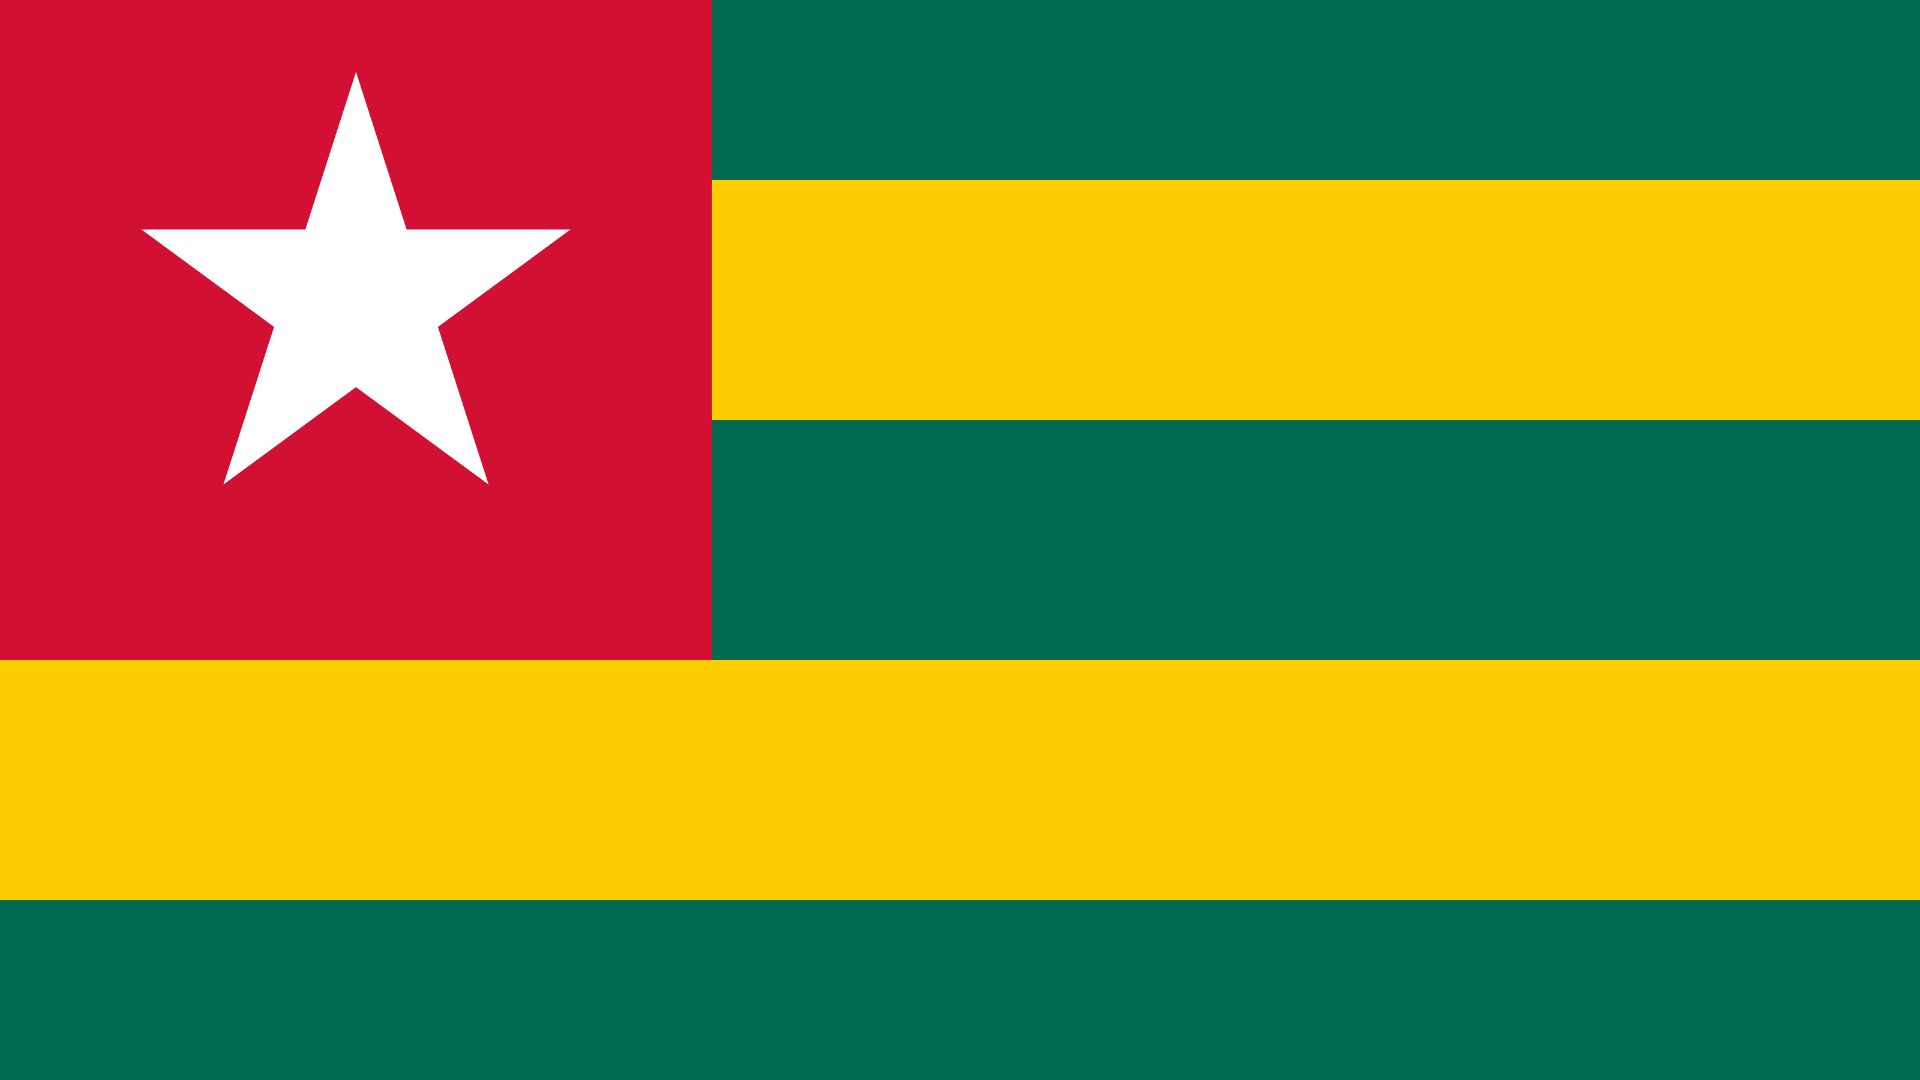 A bandeira do Togo possui as cores verde, amarelo e vermelho. Do lado esquerdo da tela, temos um quadrado vermelho com uma estrela branca no centro.